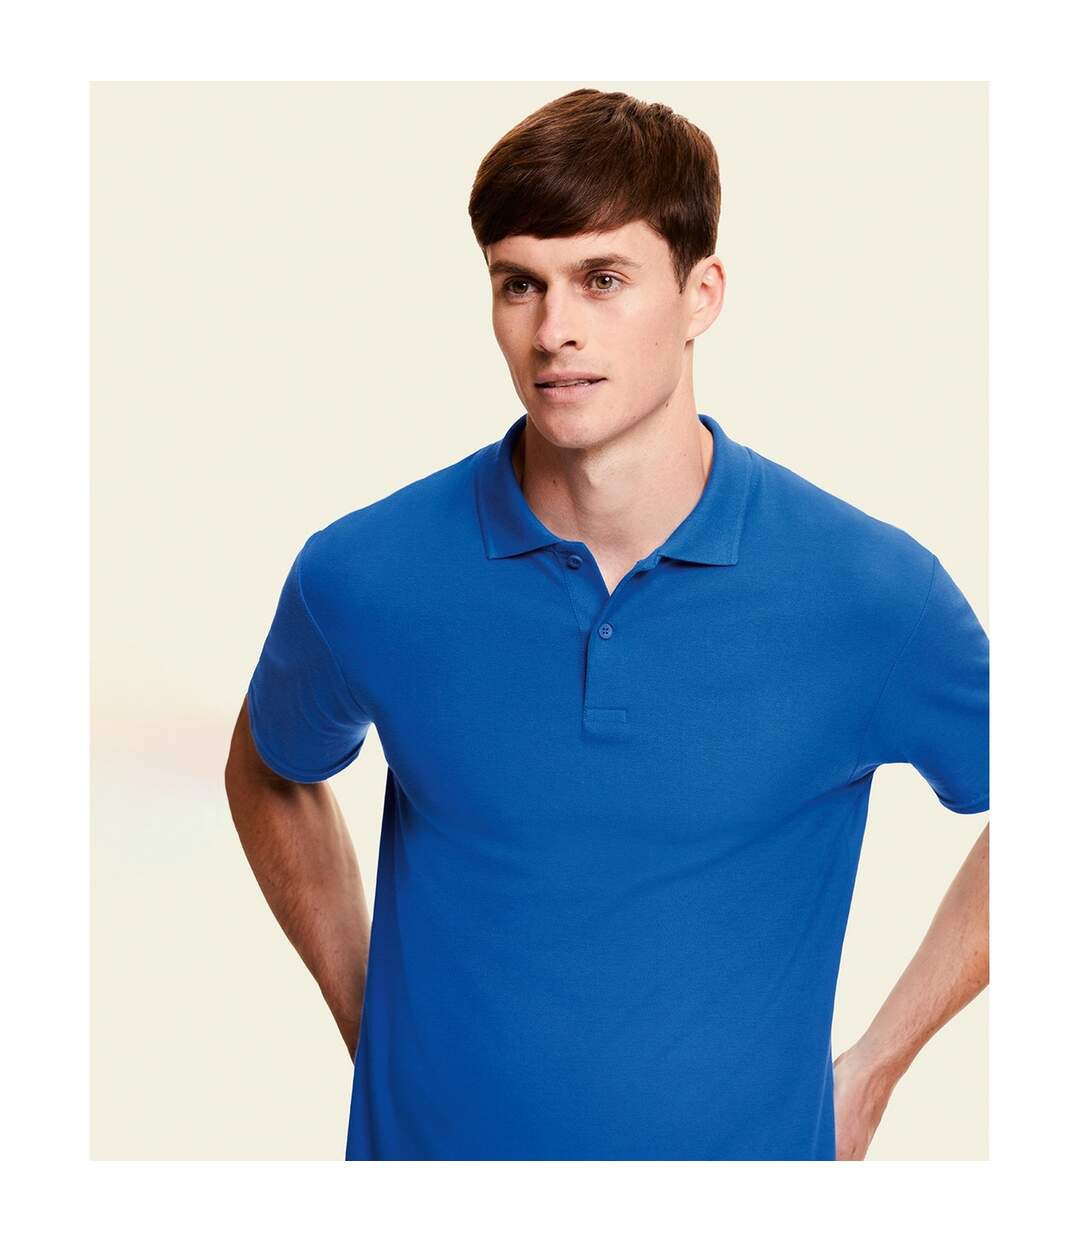 Fruit of the Loom Mens Original Polo Shirt (Royal Blue) - UTRW7879